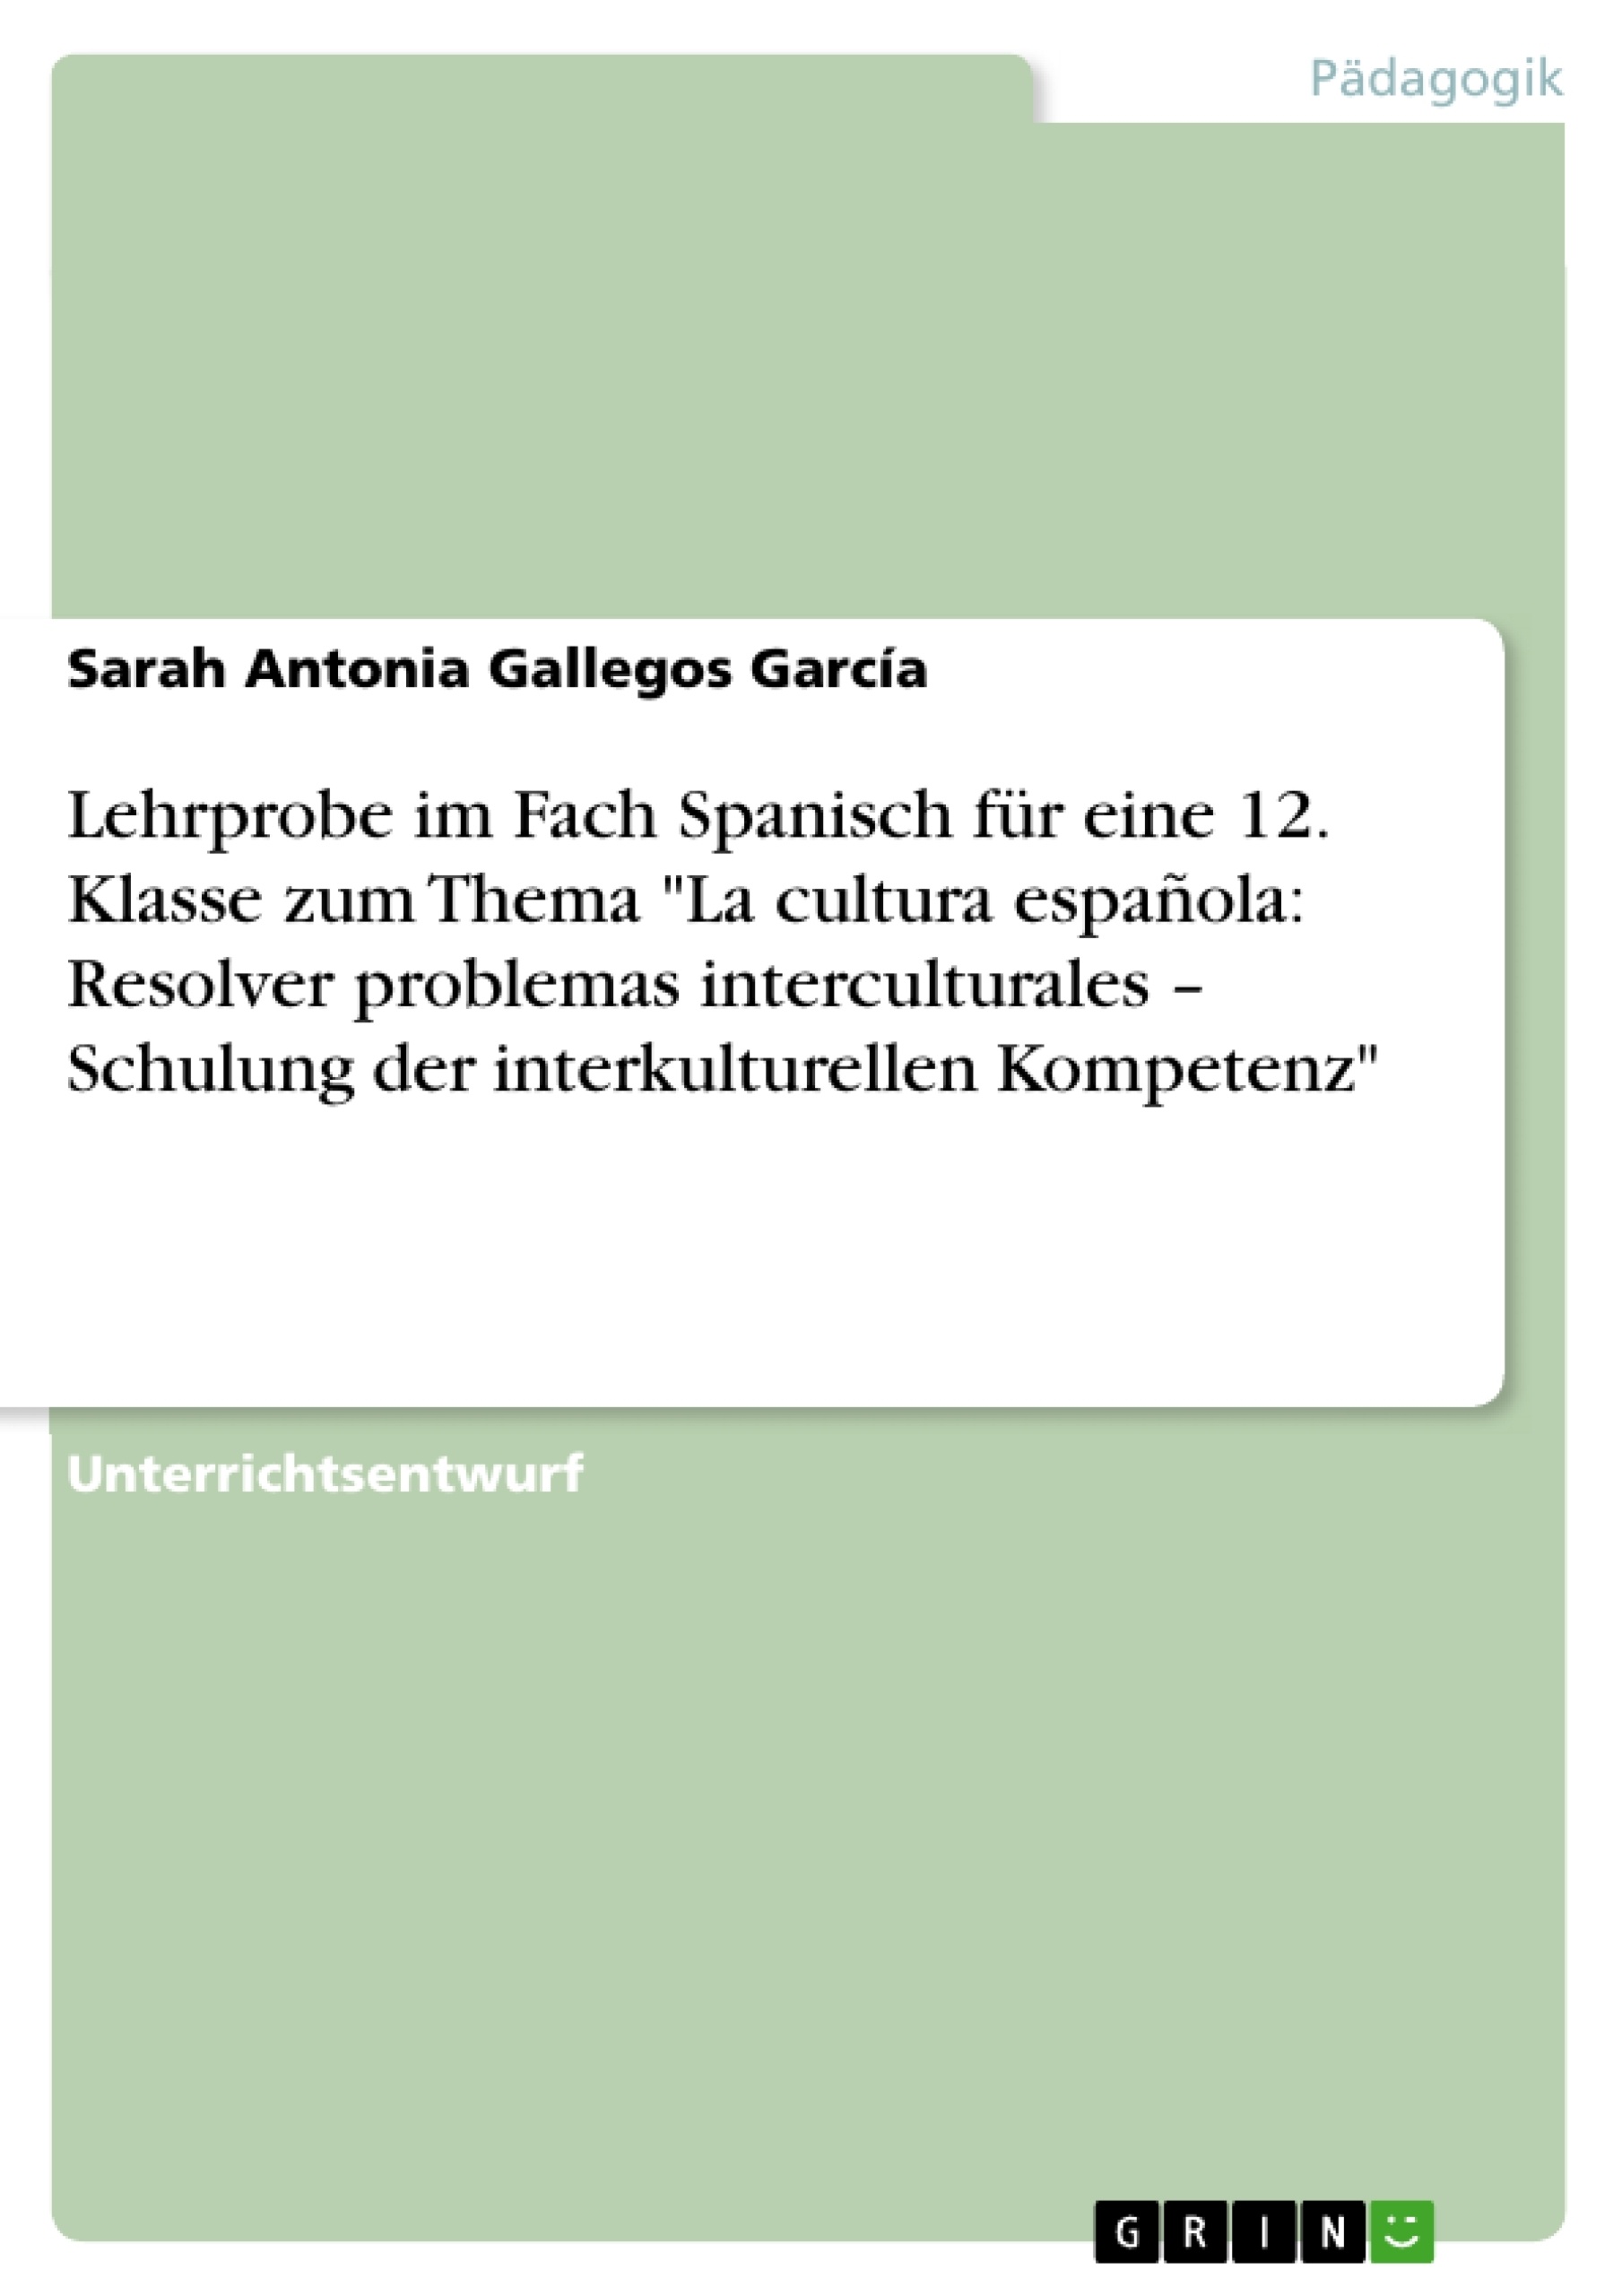 Titel: Lehrprobe im Fach Spanisch für eine 12. Klasse zum Thema "La cultura española: Resolver problemas interculturales – Schulung der interkulturellen Kompetenz"